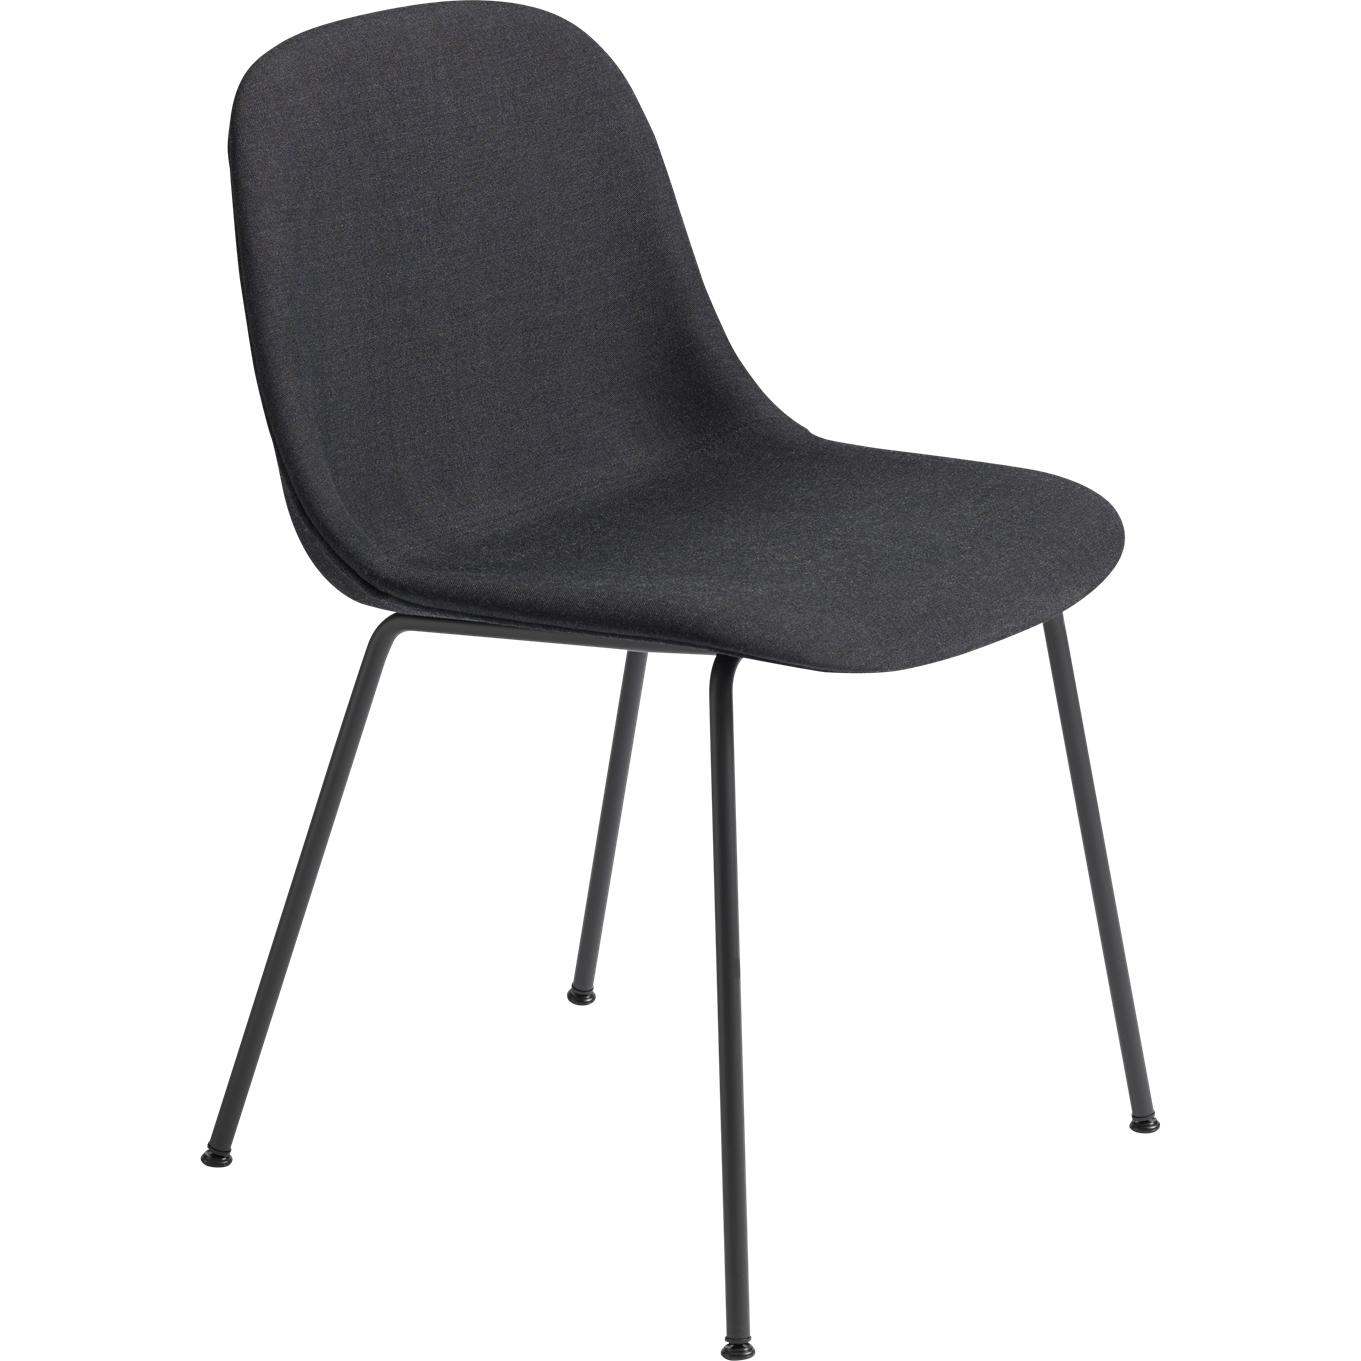 Base de tubo de silla lateral de fibra muuto, asiento de tela, negro